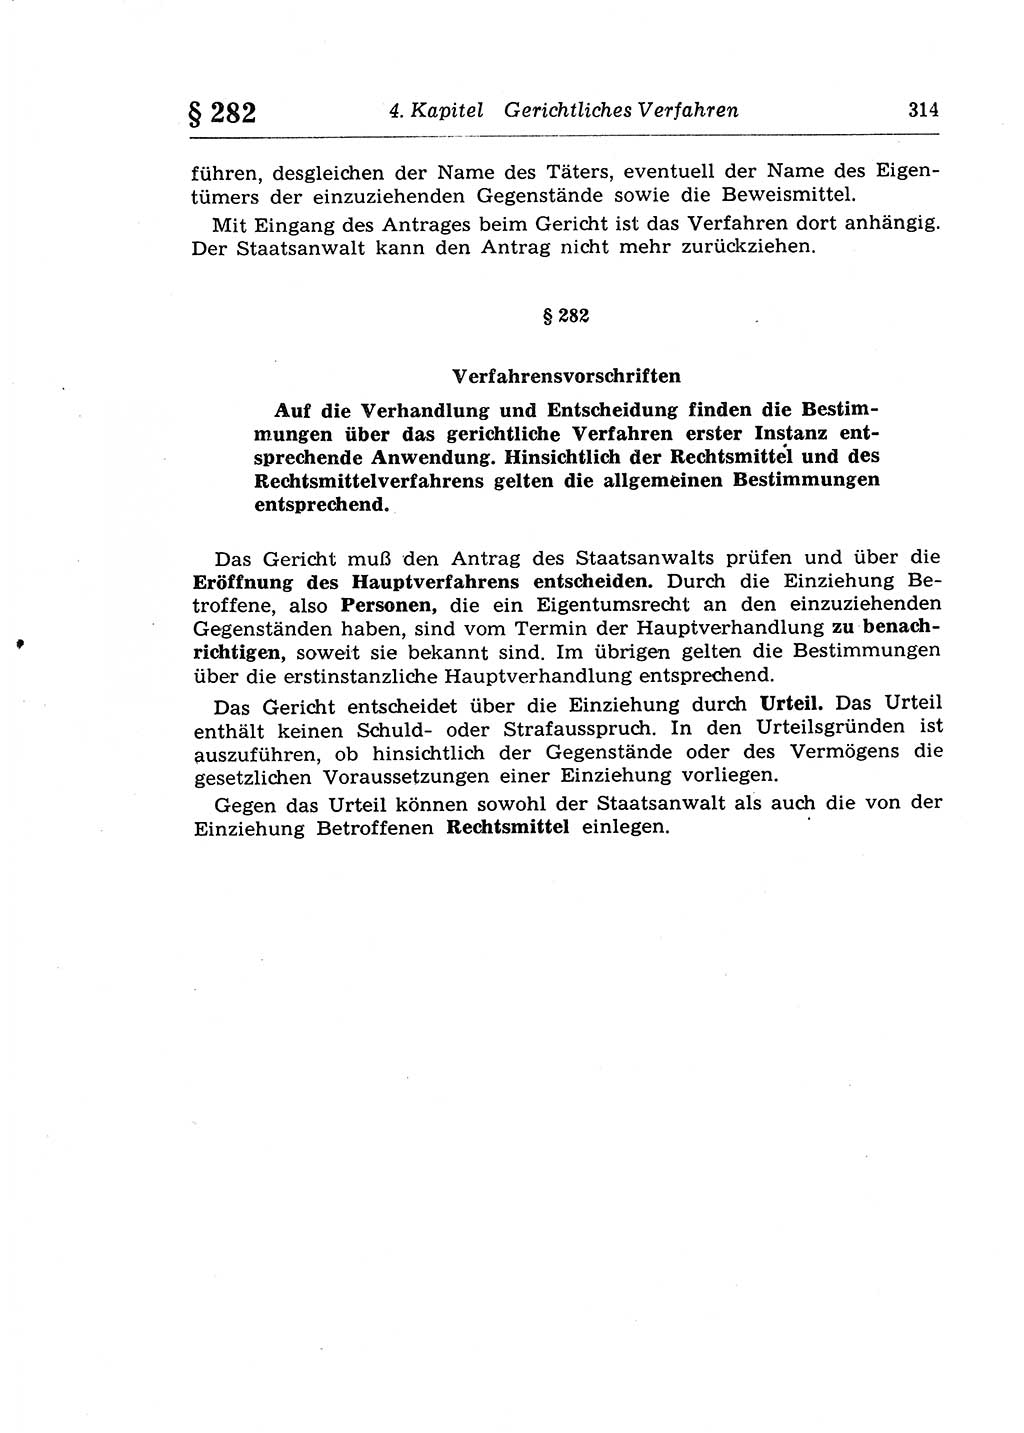 Strafprozeßrecht der DDR (Deutsche Demokratische Republik), Lehrkommentar zur Strafprozeßordnung (StPO) 1968, Seite 314 (Strafprozeßr. DDR Lehrkomm. StPO 19688, S. 314)